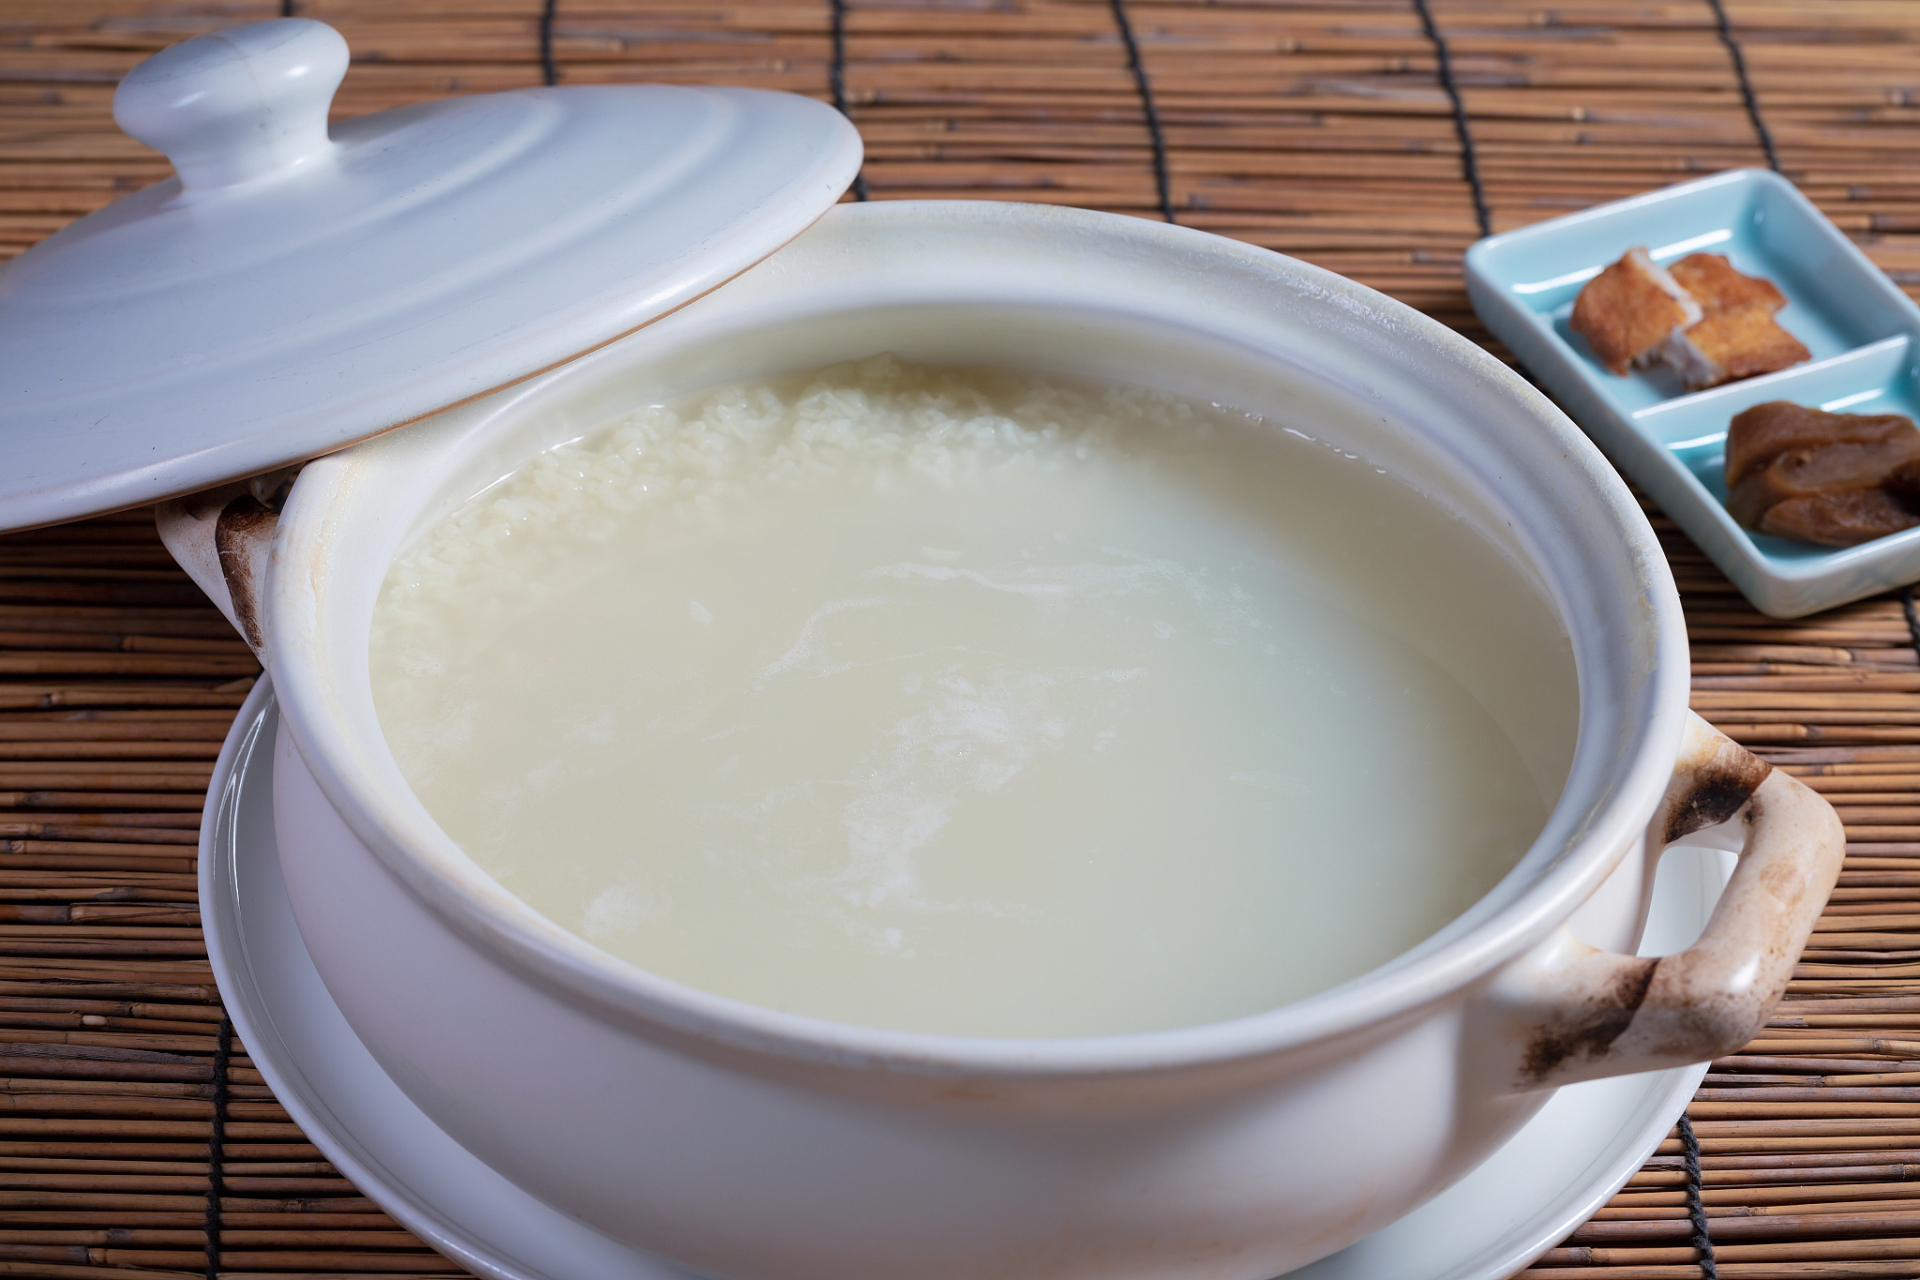 首先,米汤的汤里含有丰富的维生素和矿物质,比如钙,铁,锌等